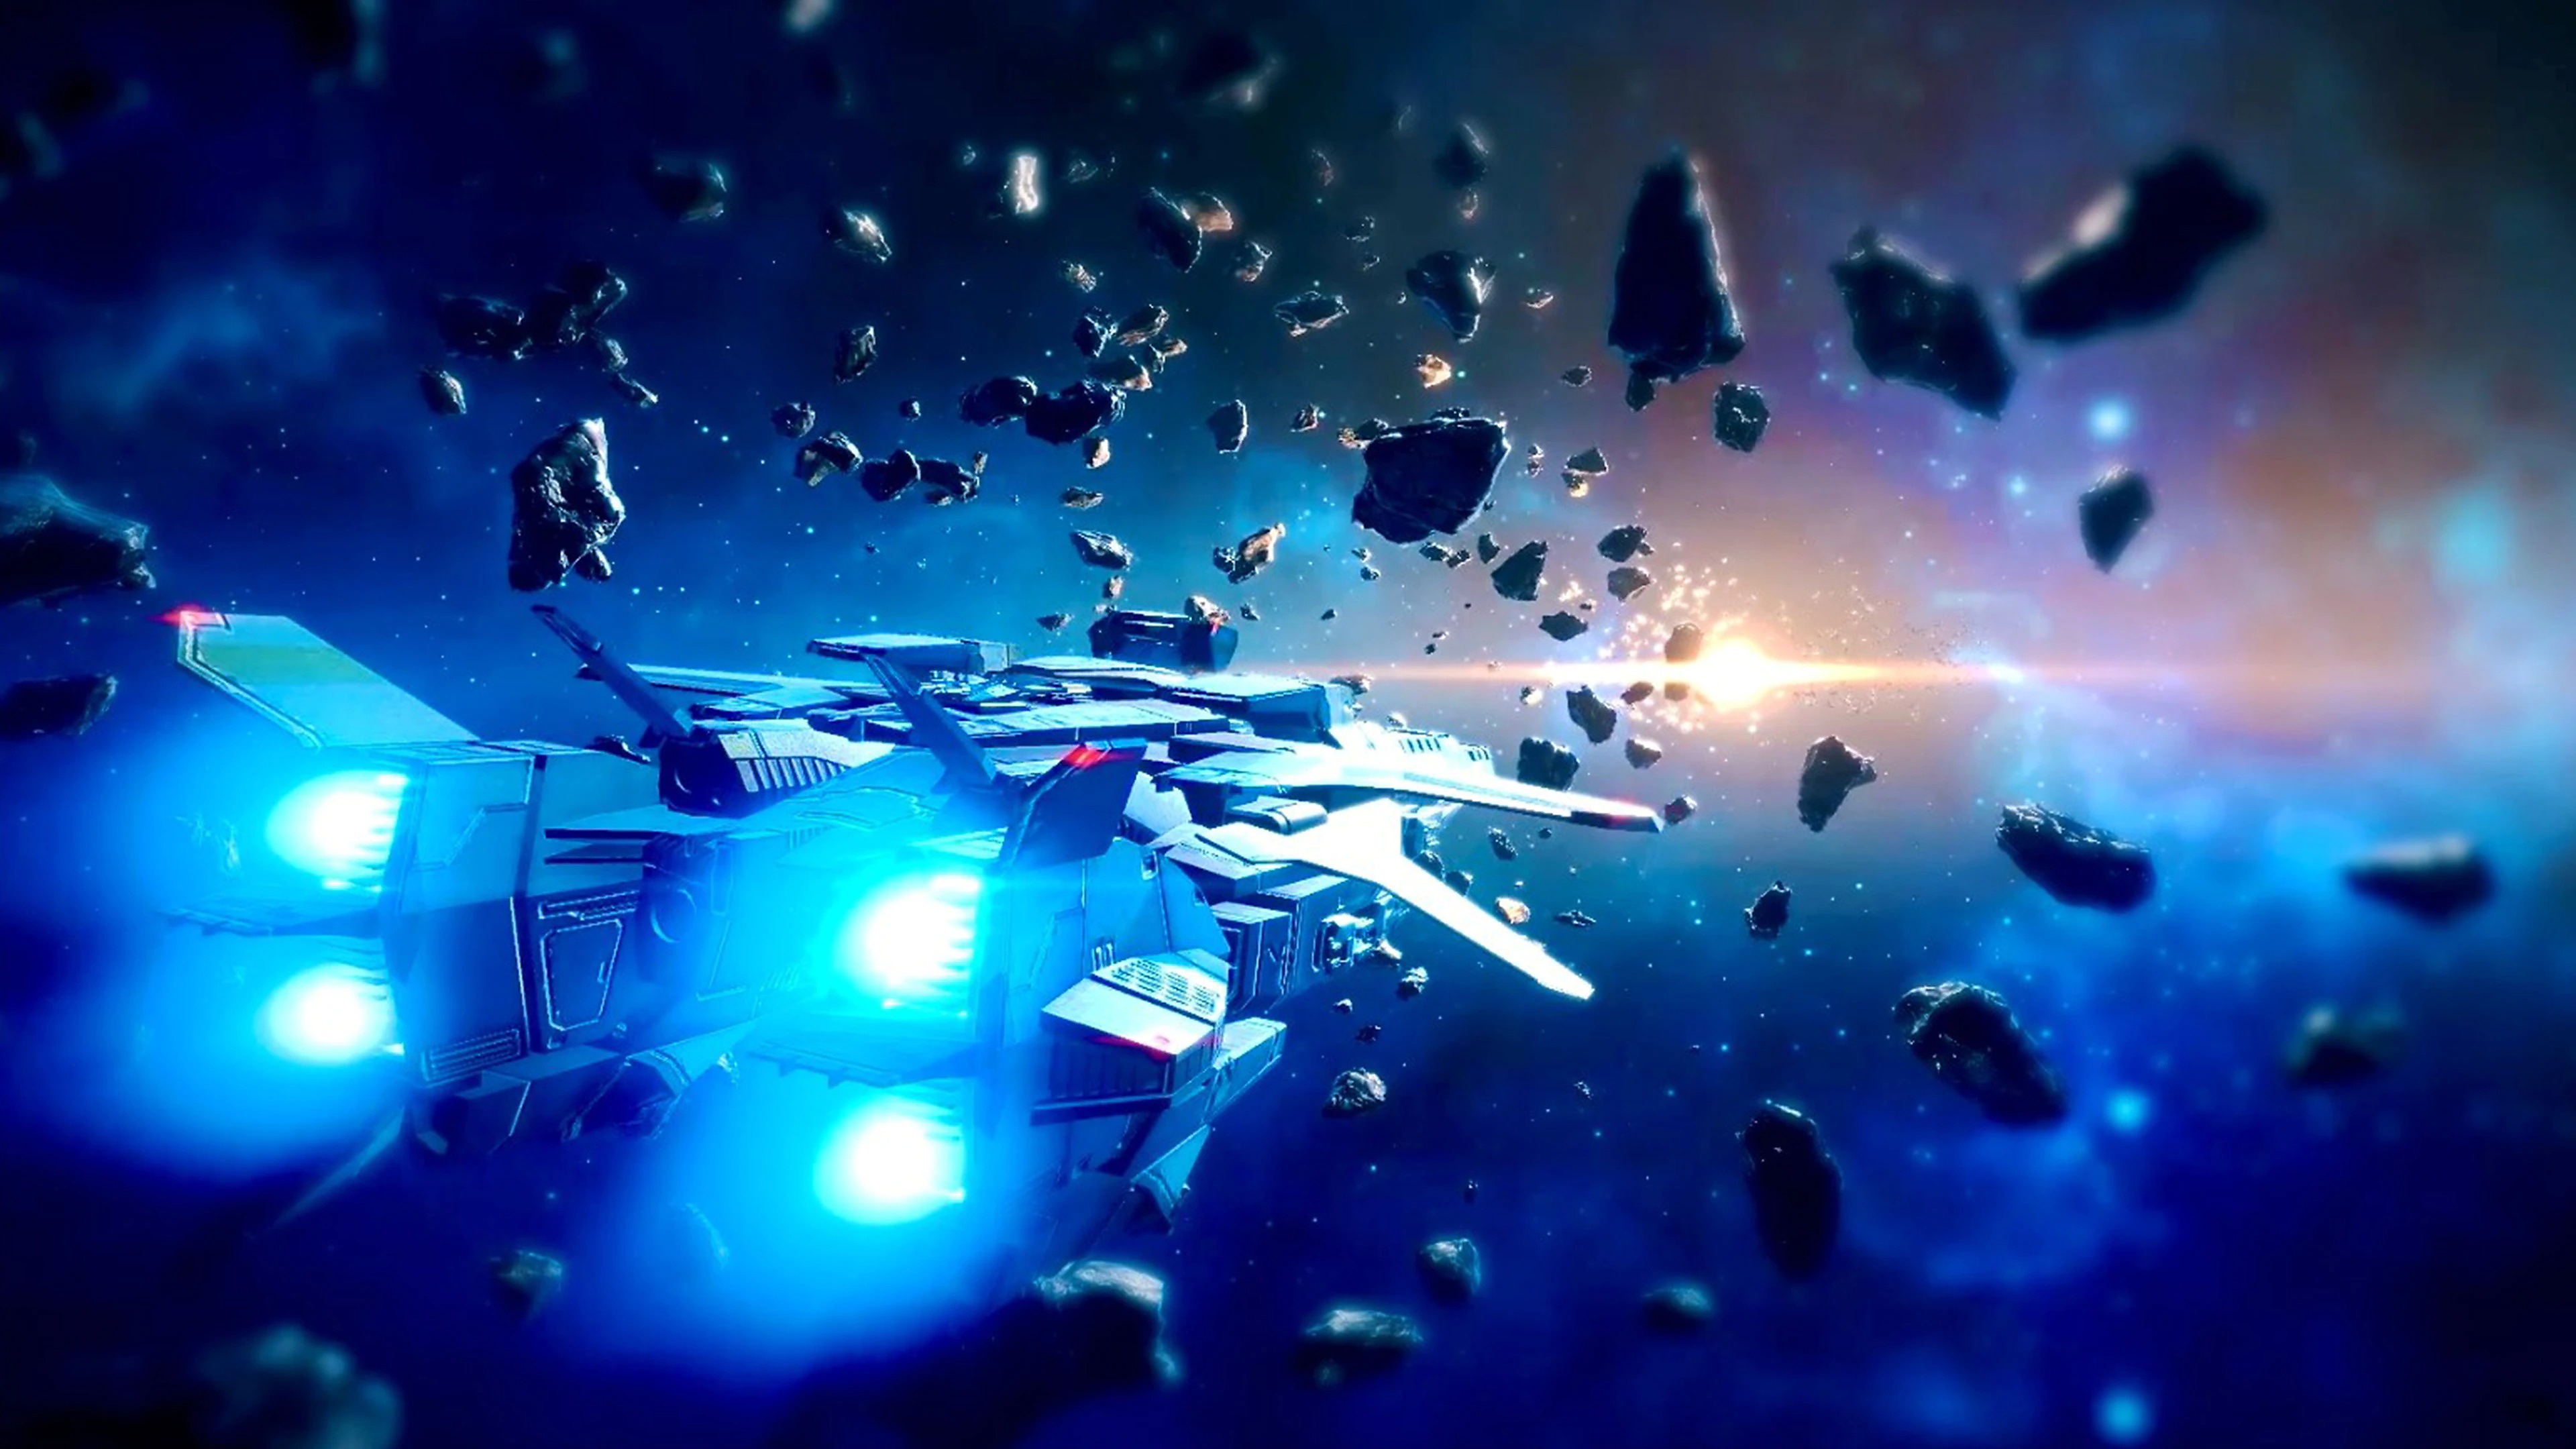 Capture d'écran de Relayer montrant un vaisseau spatial évoluant dans l'espace, au milieu d'astéroïdes